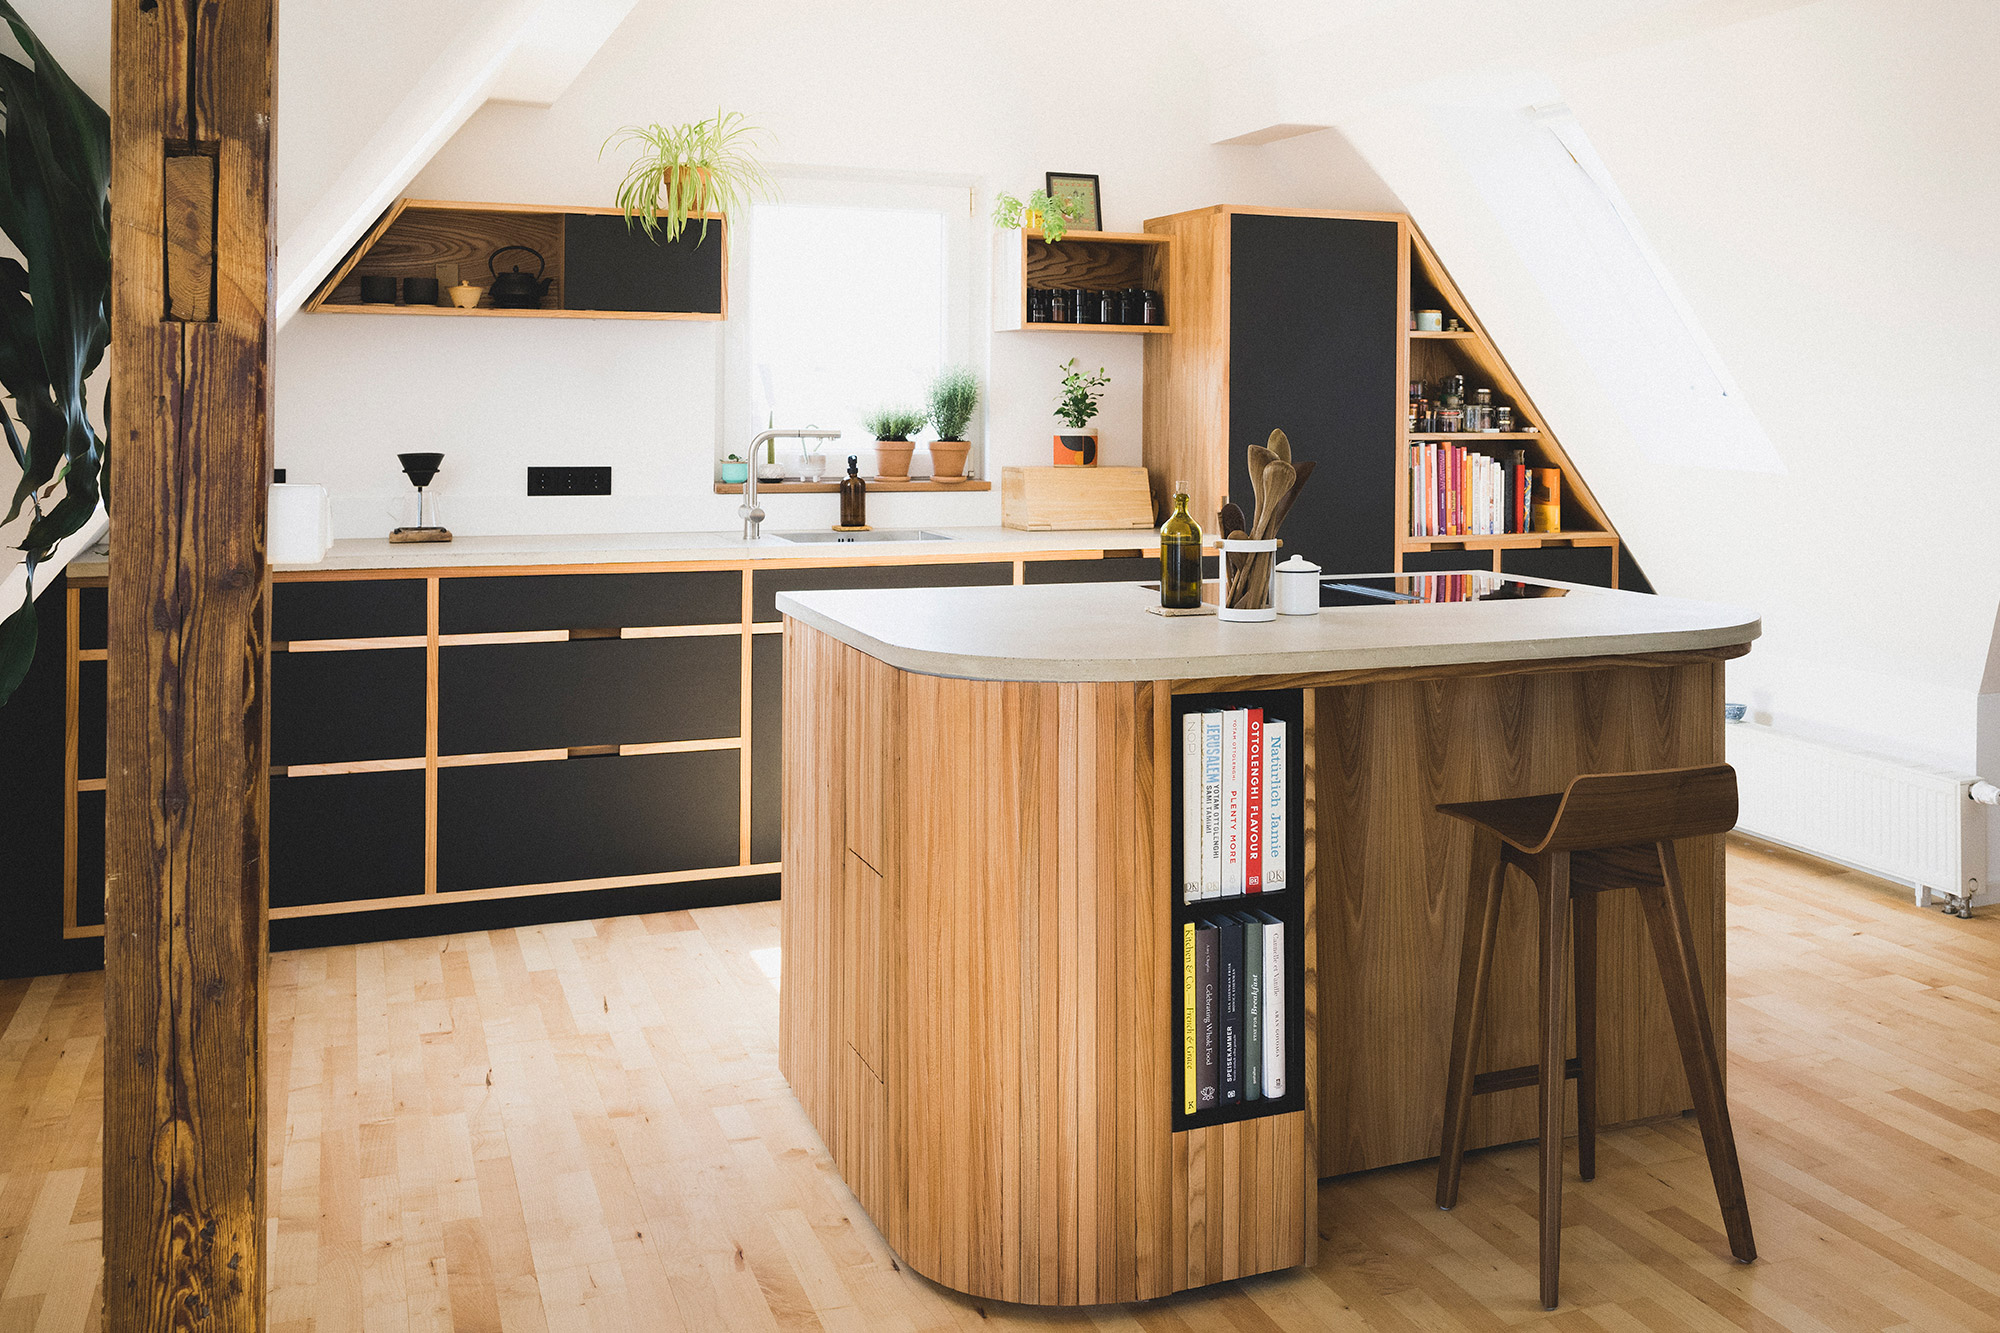 Maßgeschneiderte Küche aus Holz und Beton in einem renovierten Haus in Nürnberg mit Bücherregal und Kochbüchern.